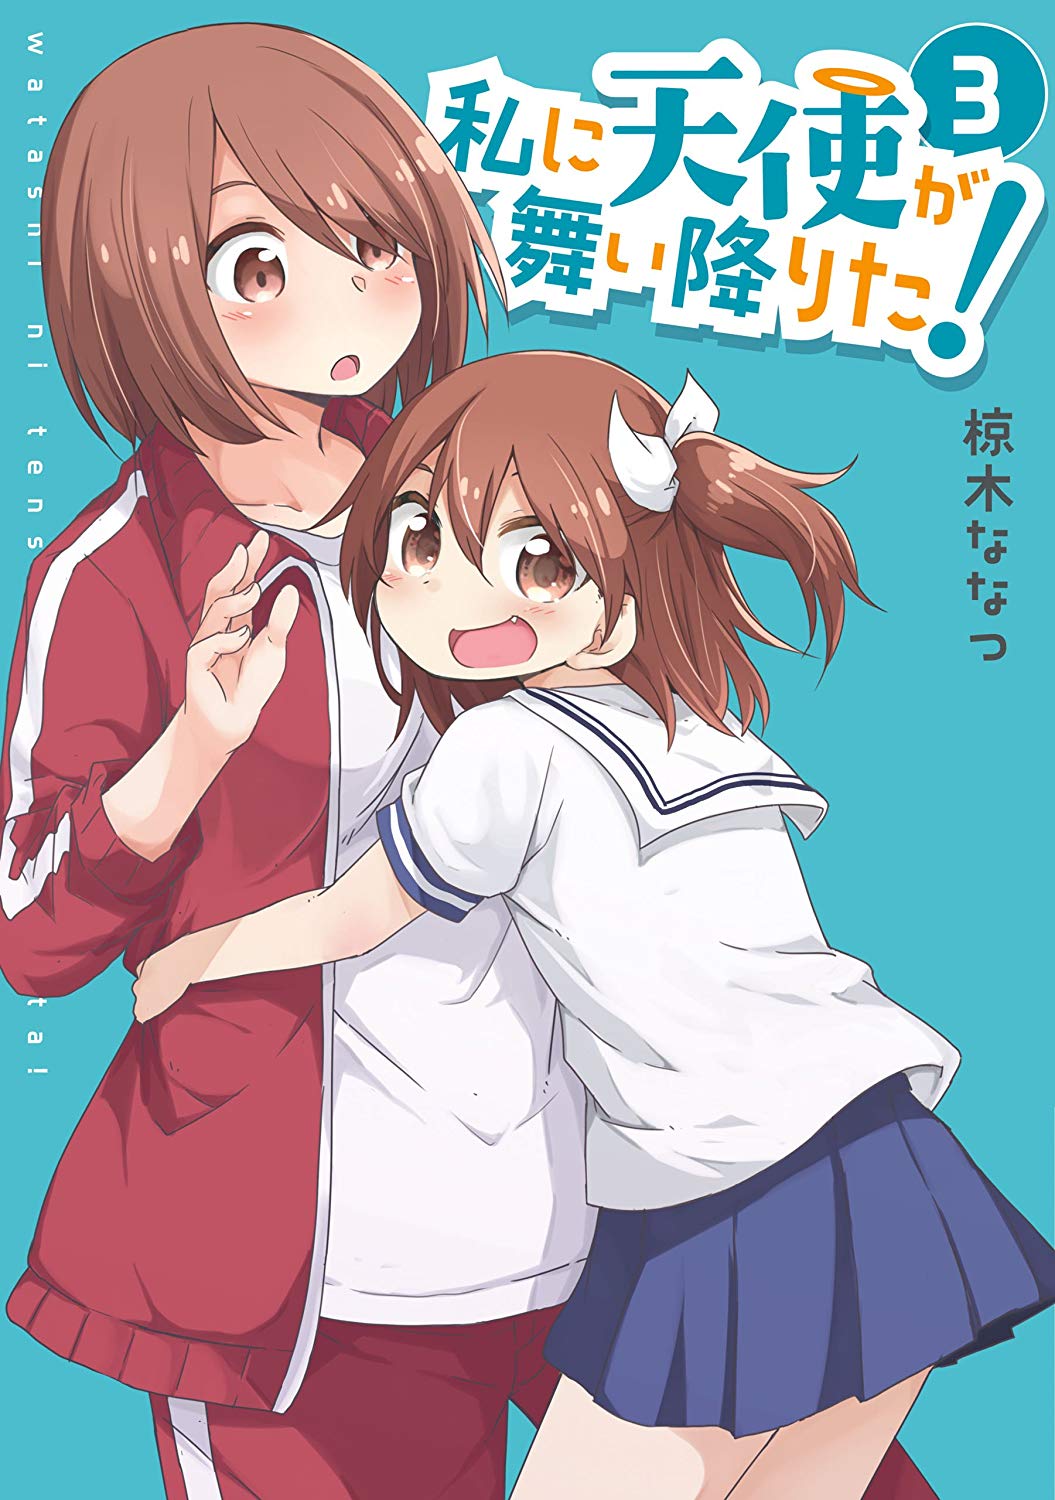 Watashi ni Tenshi ga Maiorita! Manga Gets TV Anime at Doga Kobo - News -  Anime News Network